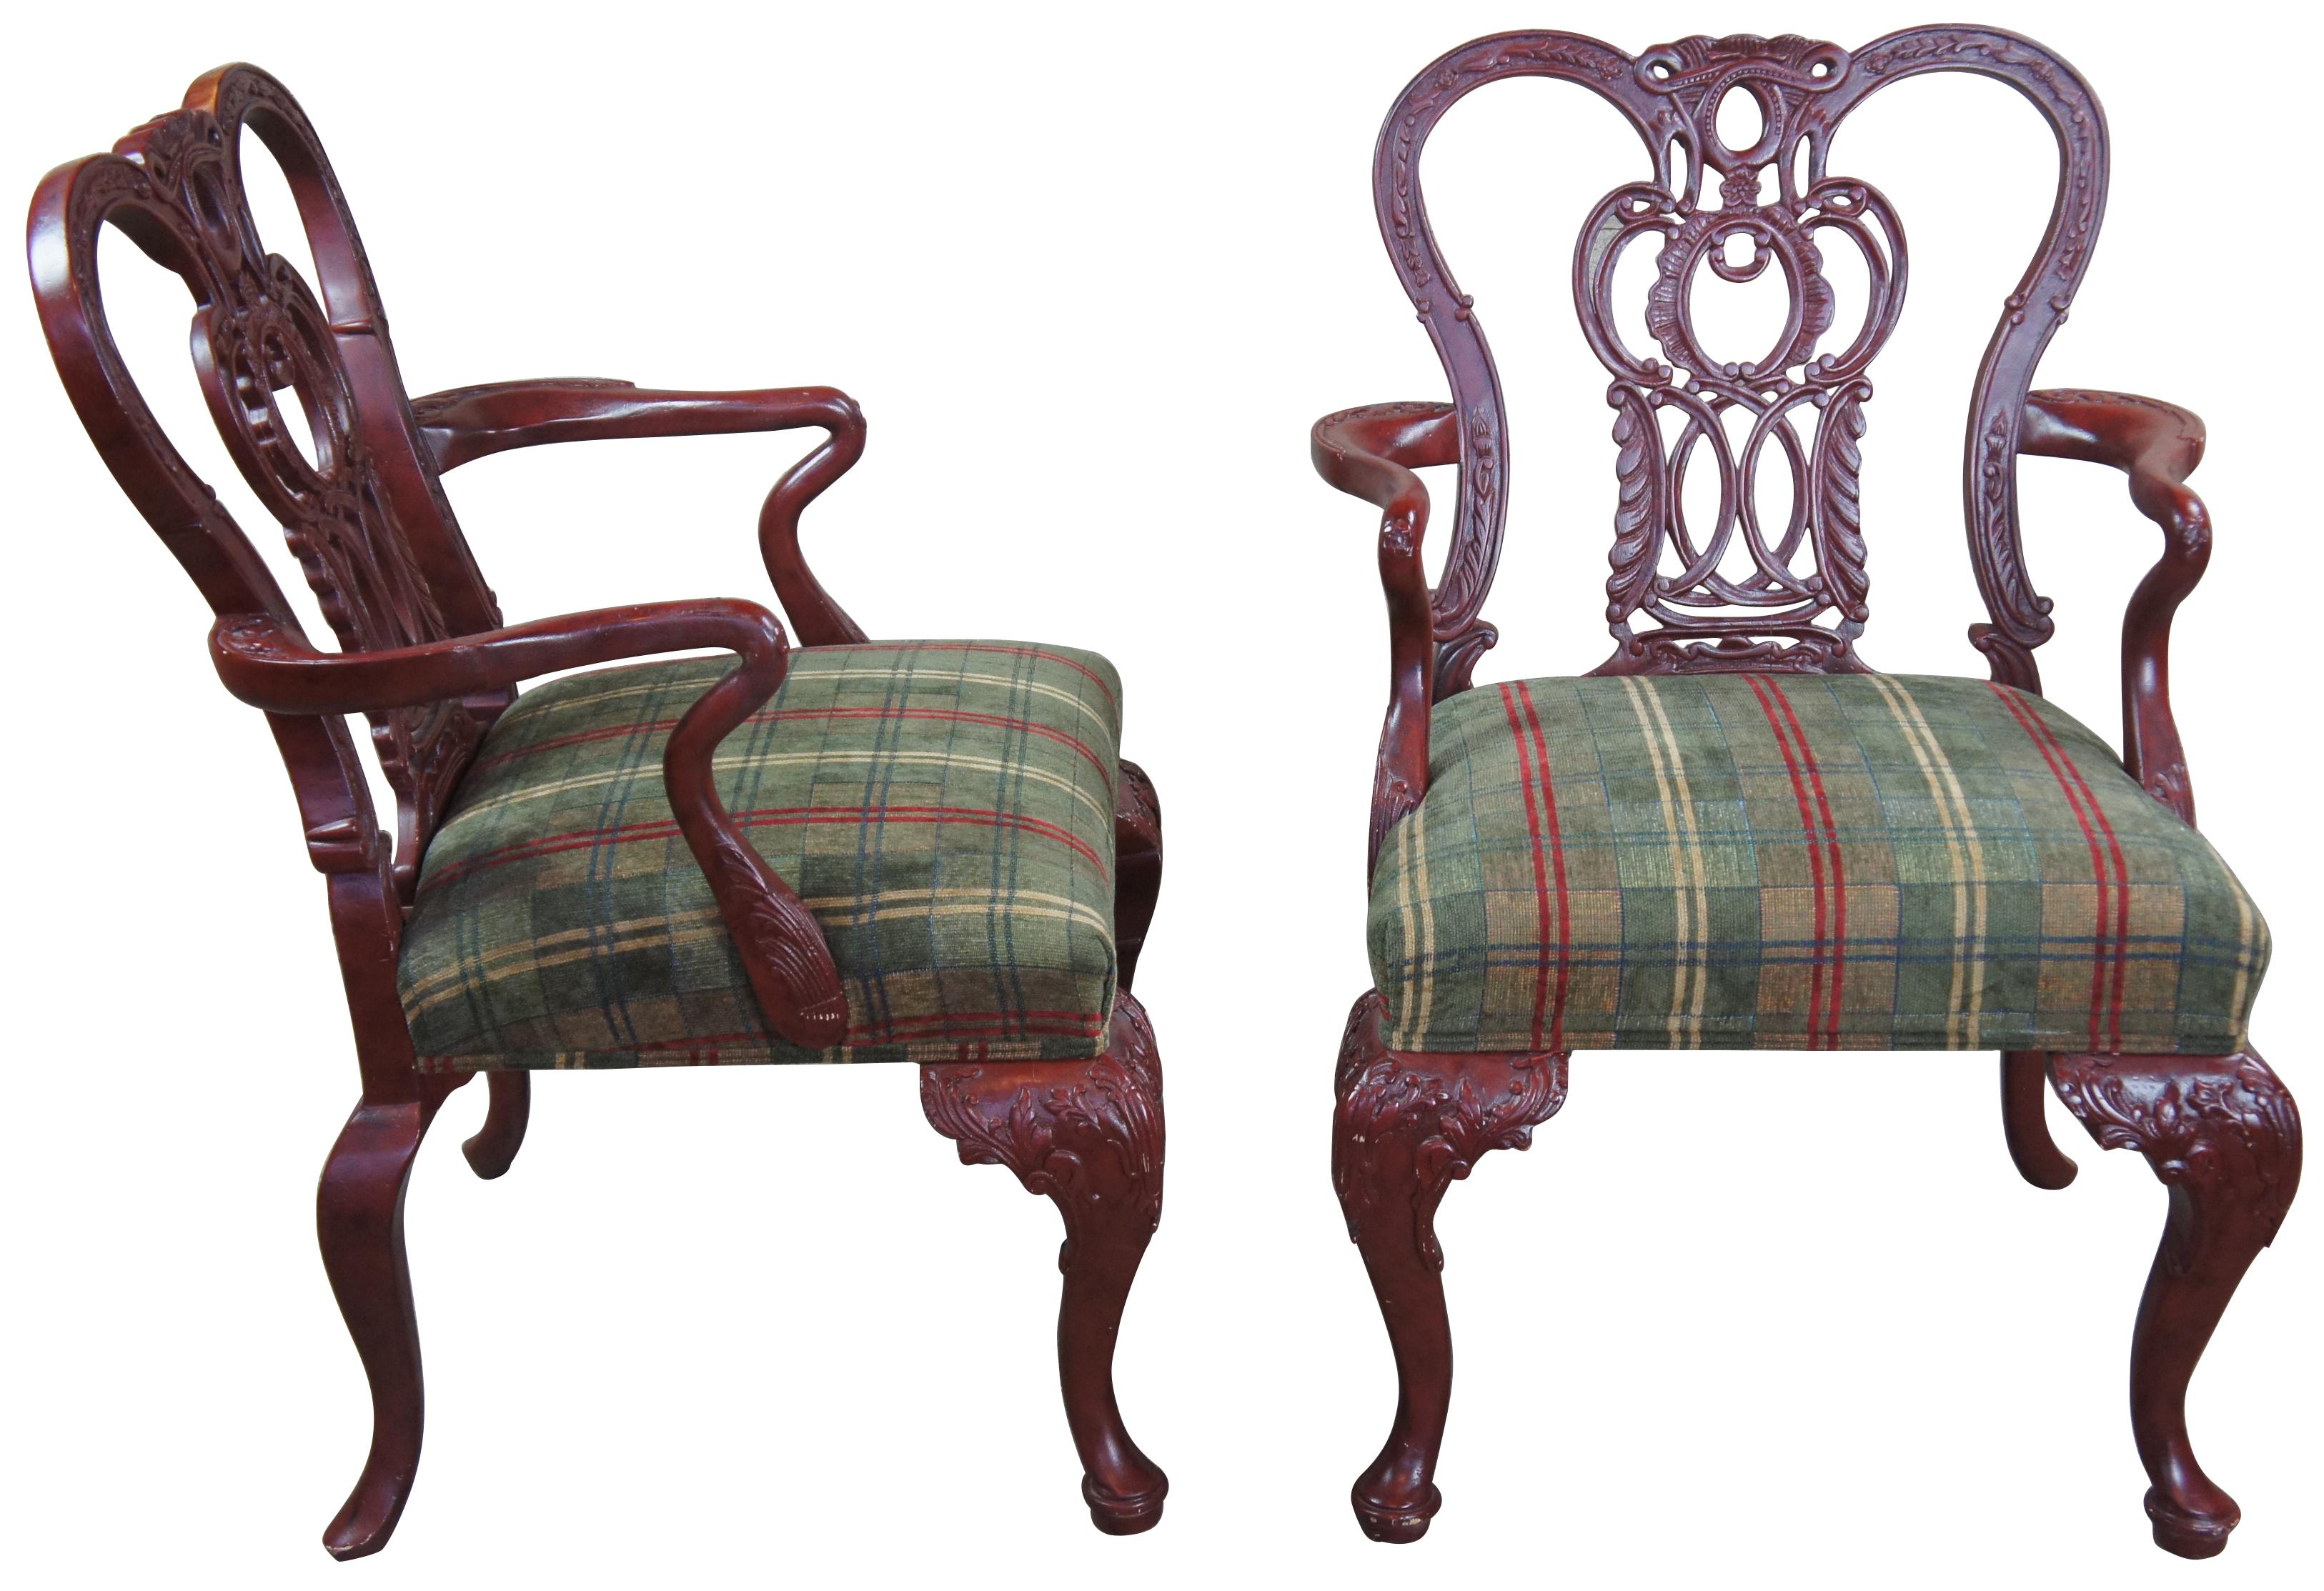 2 fauteuils d'appoint vintage Century Furniture Chippendale à col de cygne en acajou rouge

Paire de fauteuils de style Chippendale par Century Furniture de Hickory en Caroline du Nord. Il présente un style Chippendale orné avec des bras en col de